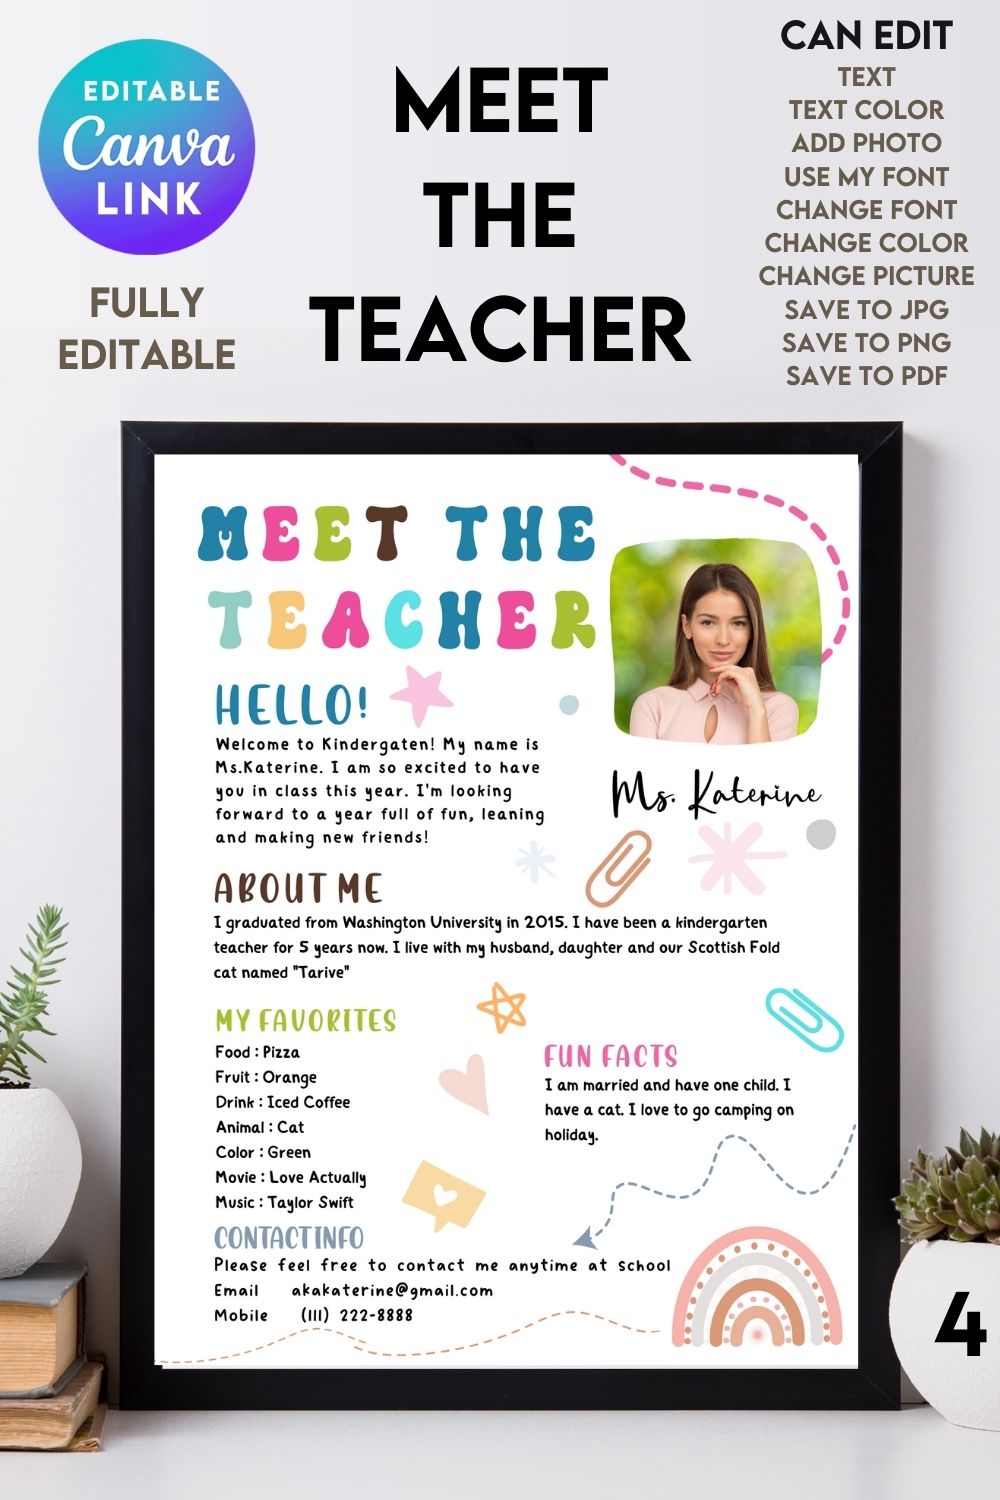 Meet The Teacher #4 – Canva Template pinterest preview image.